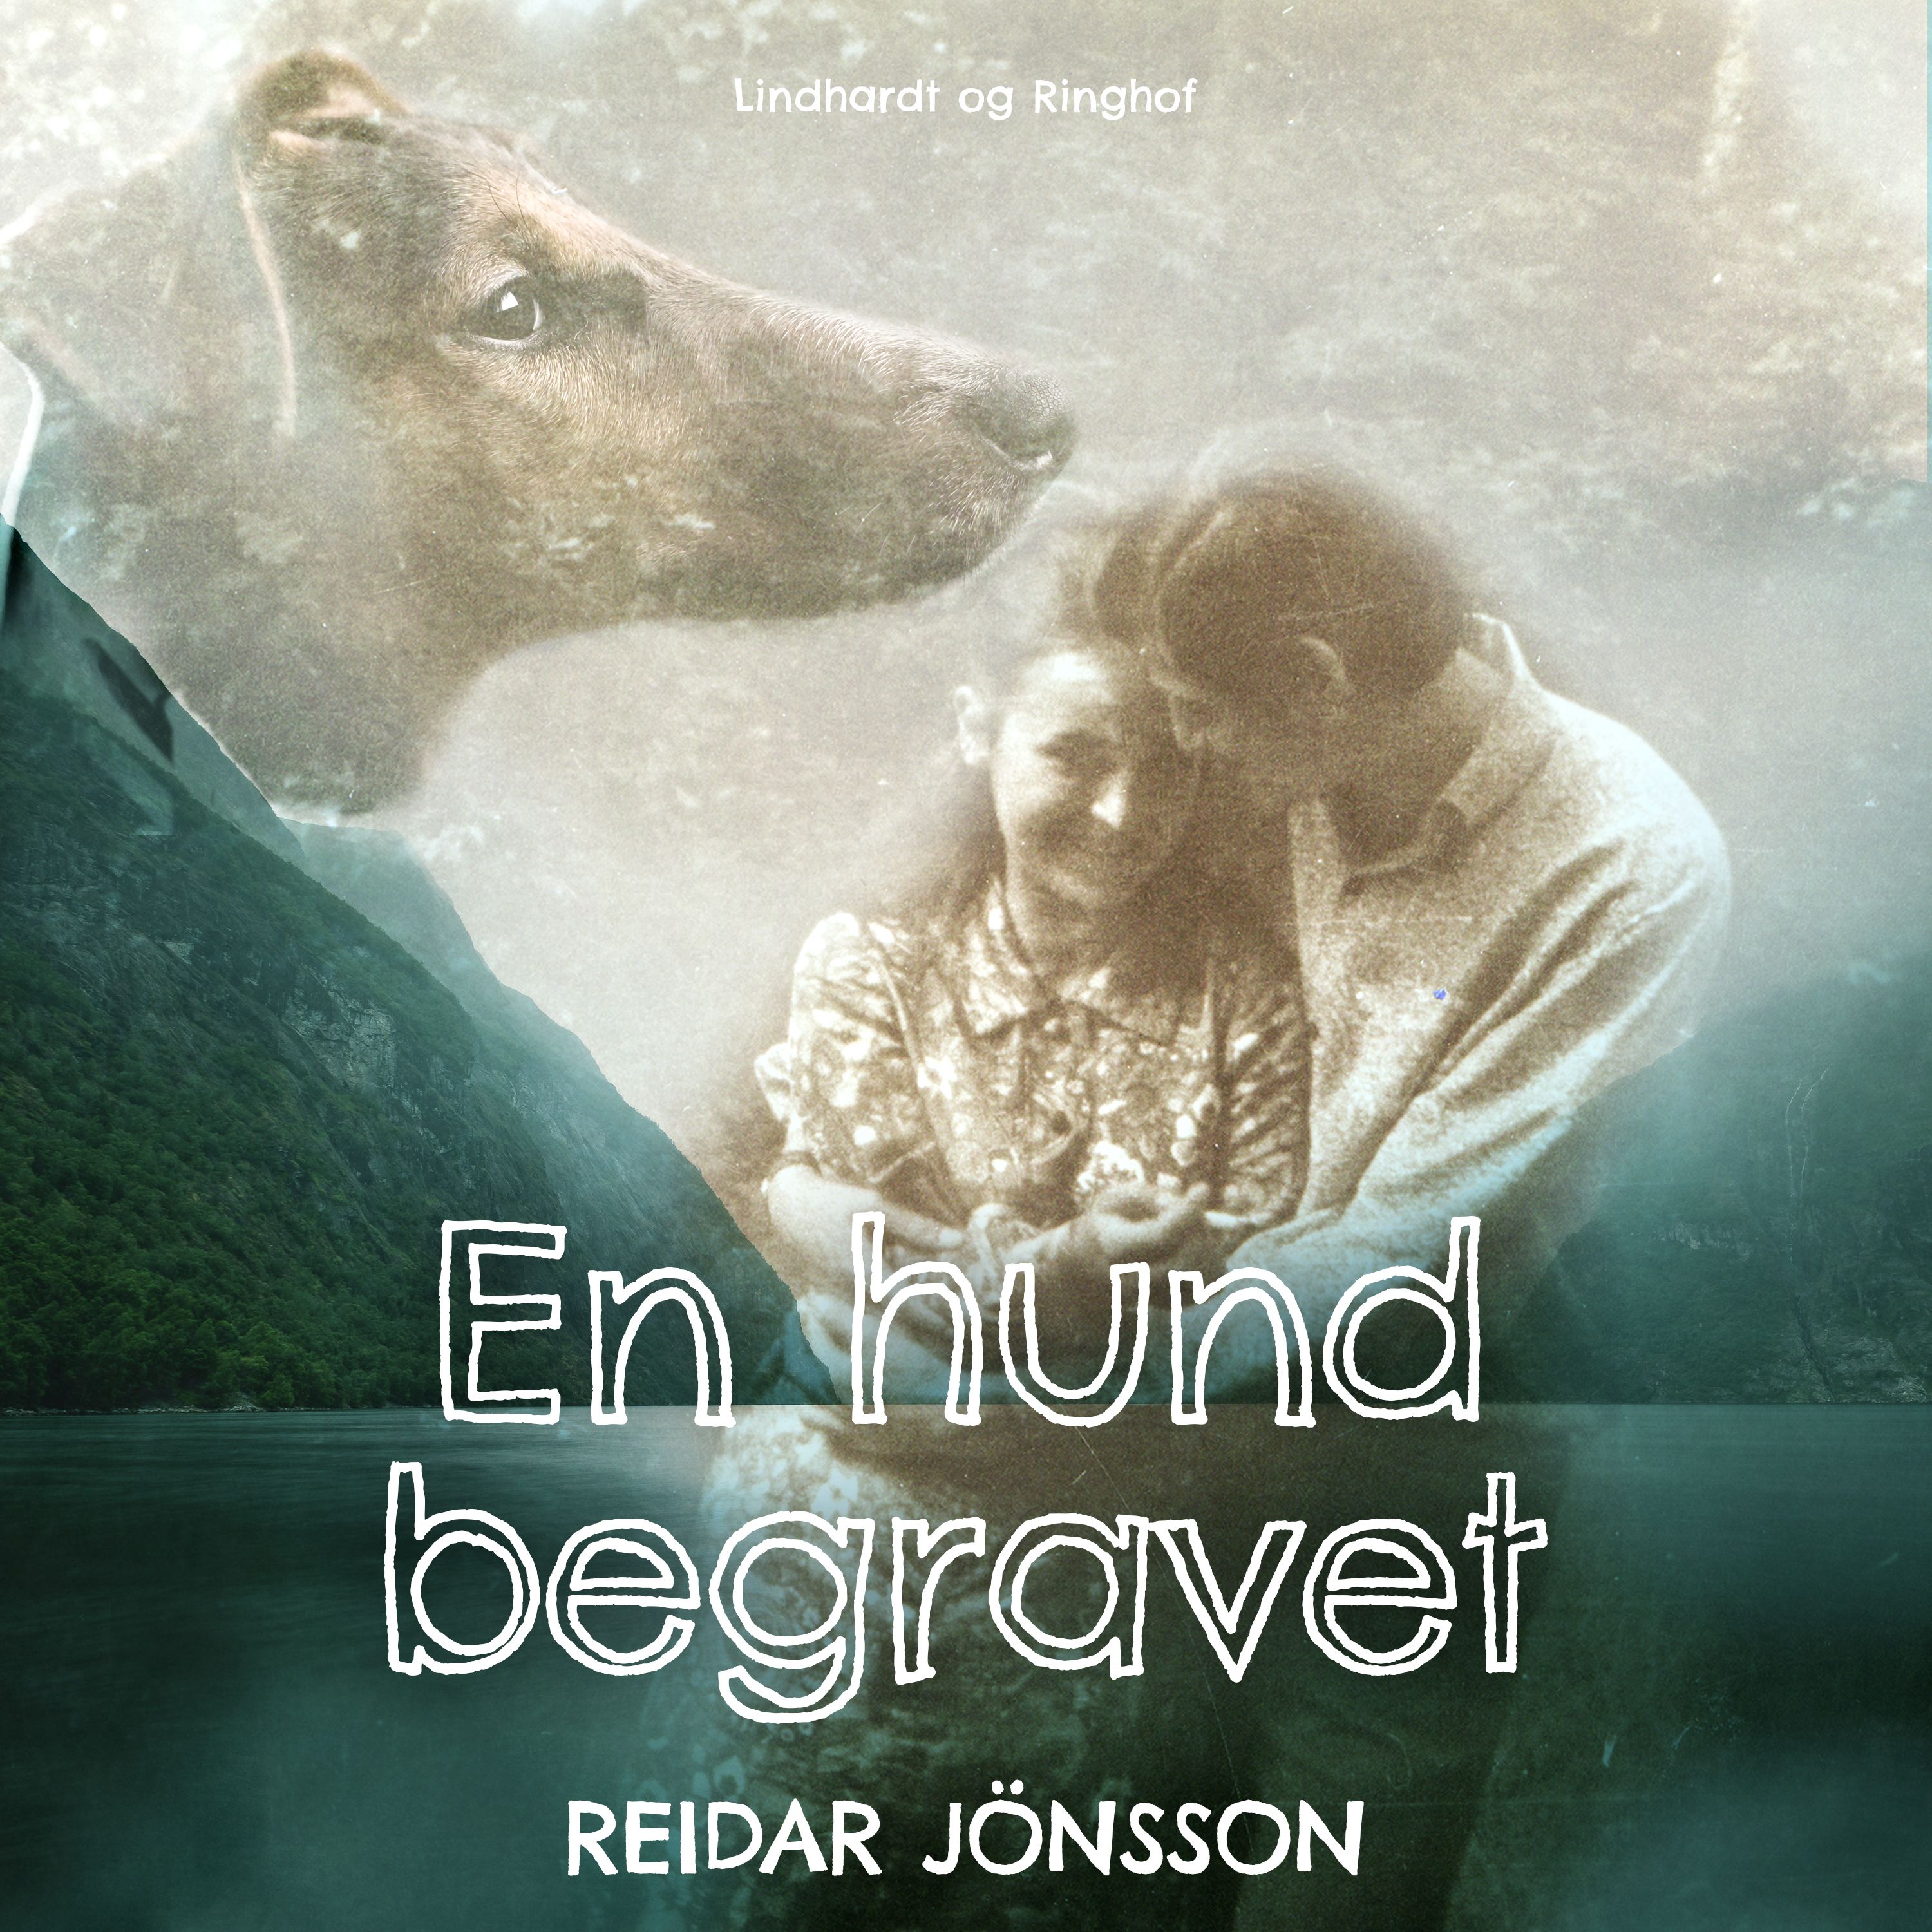 En hund begravet, ljudbok av Reidar Jönsson